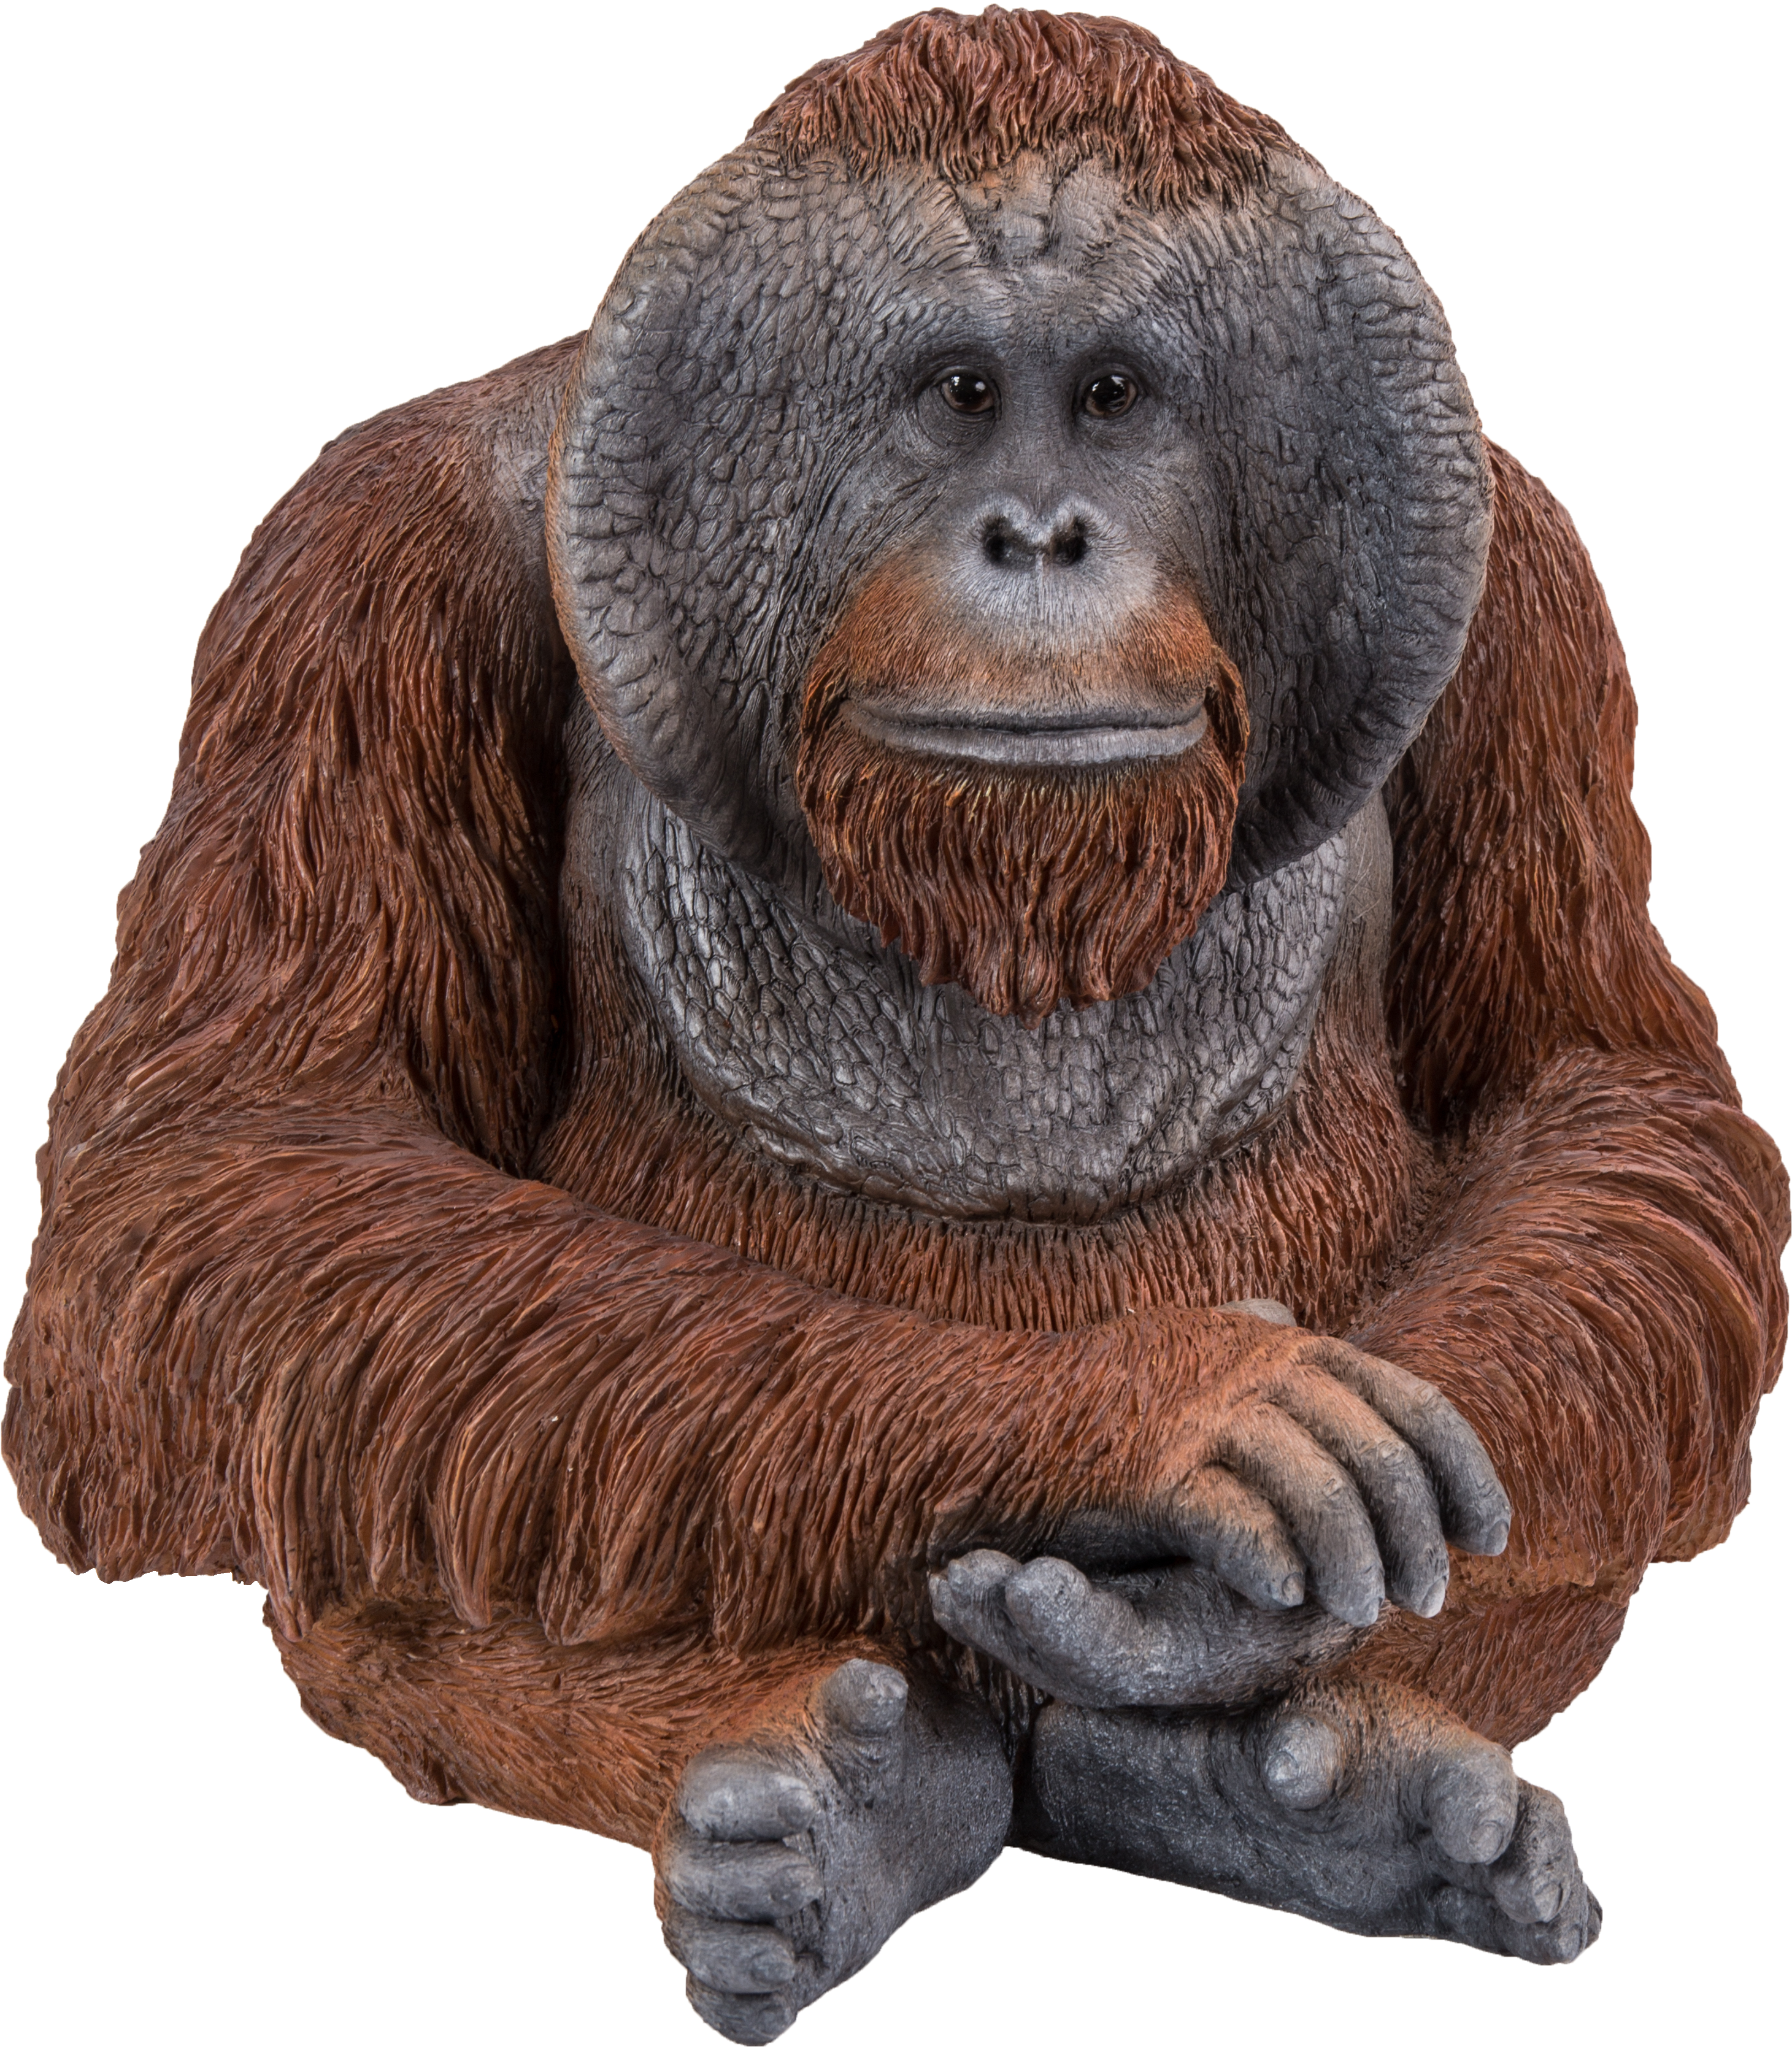 Thoughtful Orangutan Portrait